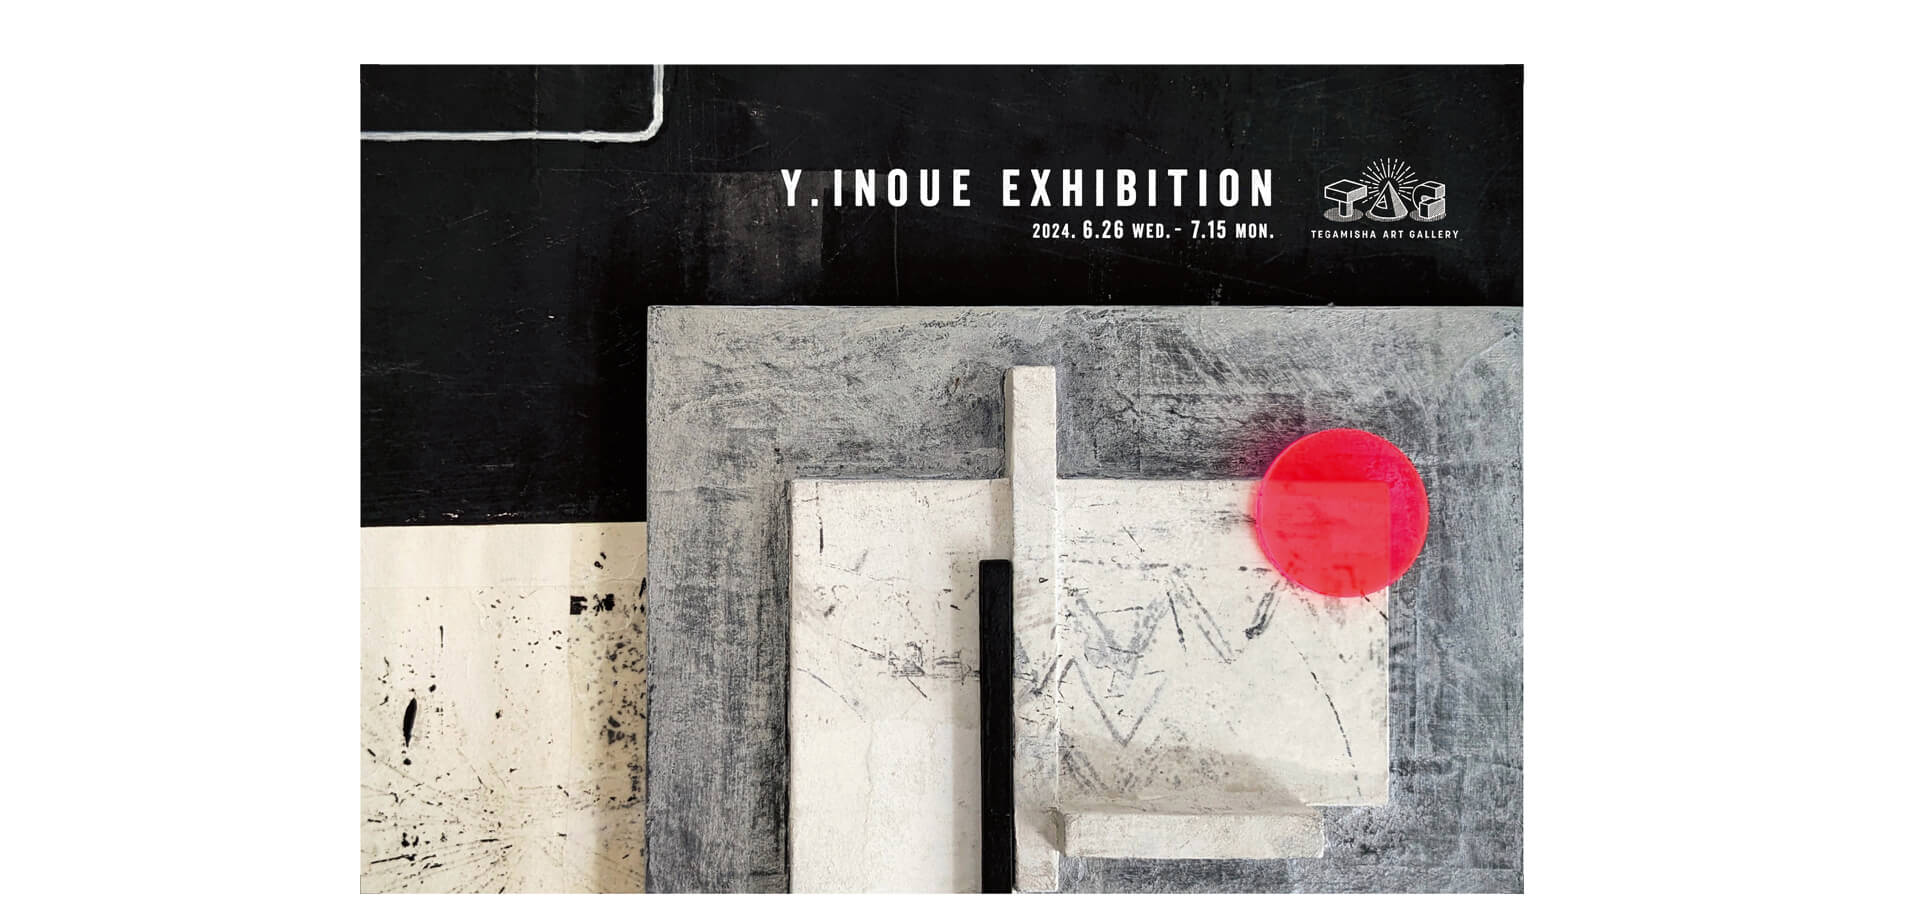 「Y.Inoue Exhibition」 at TEGAMISHA ART GALLERY バナー